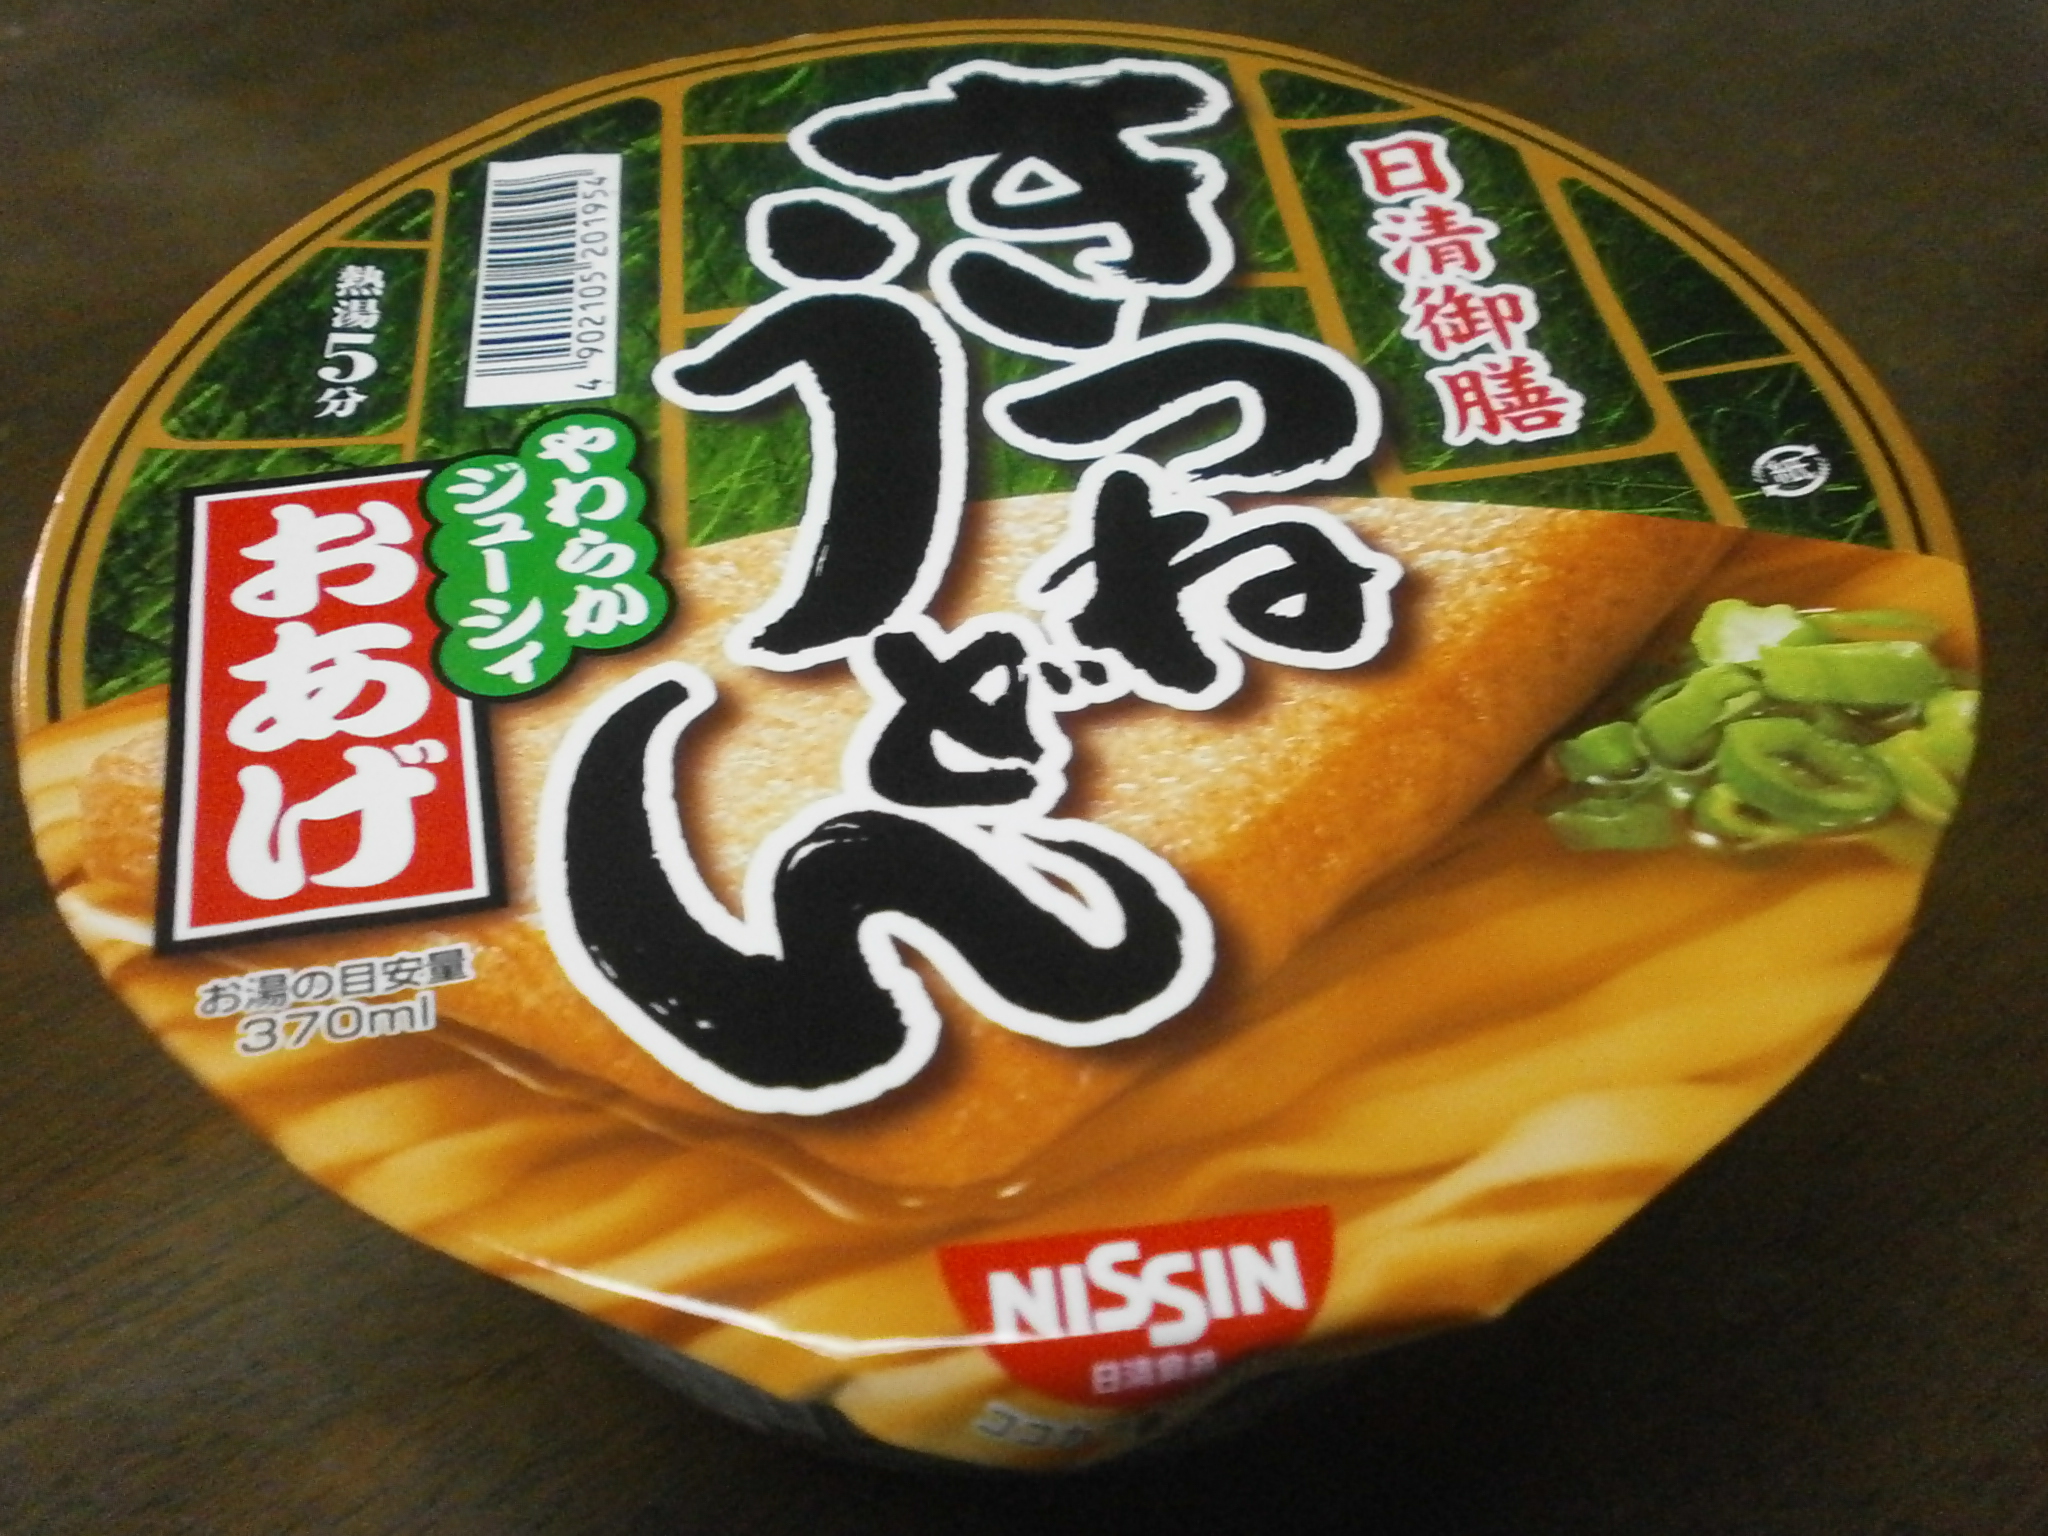 Che ad alto contenuto calorico? Noodle soup? Kitsune udon?